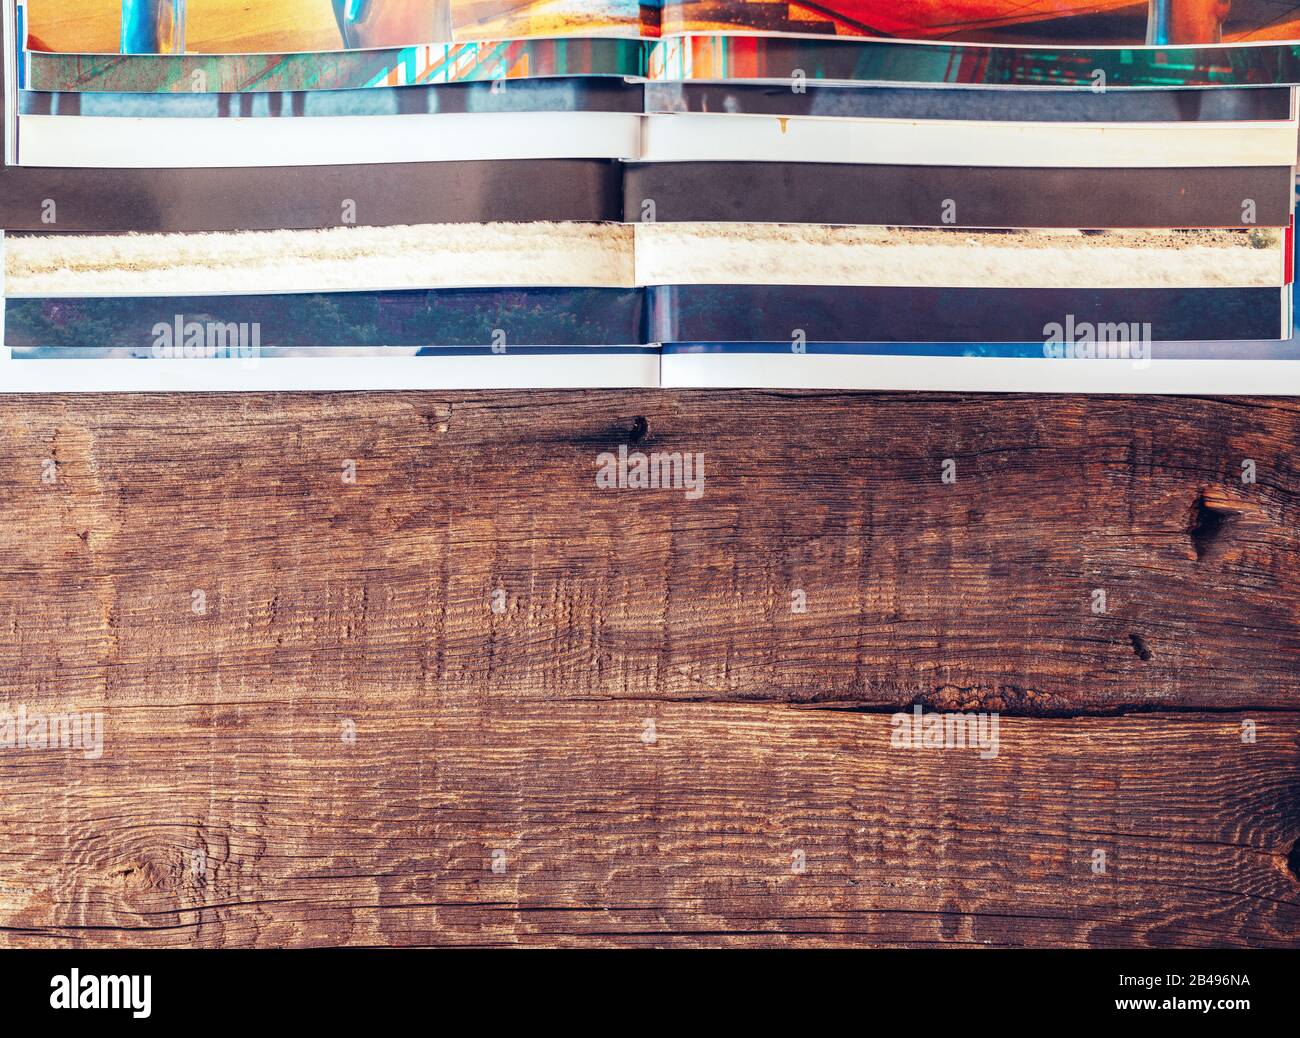 Vista dall'alto di pile di diverse riviste tabloid e overlayed su tavoli in legno. Concetto di texture di sfondo Foto Stock